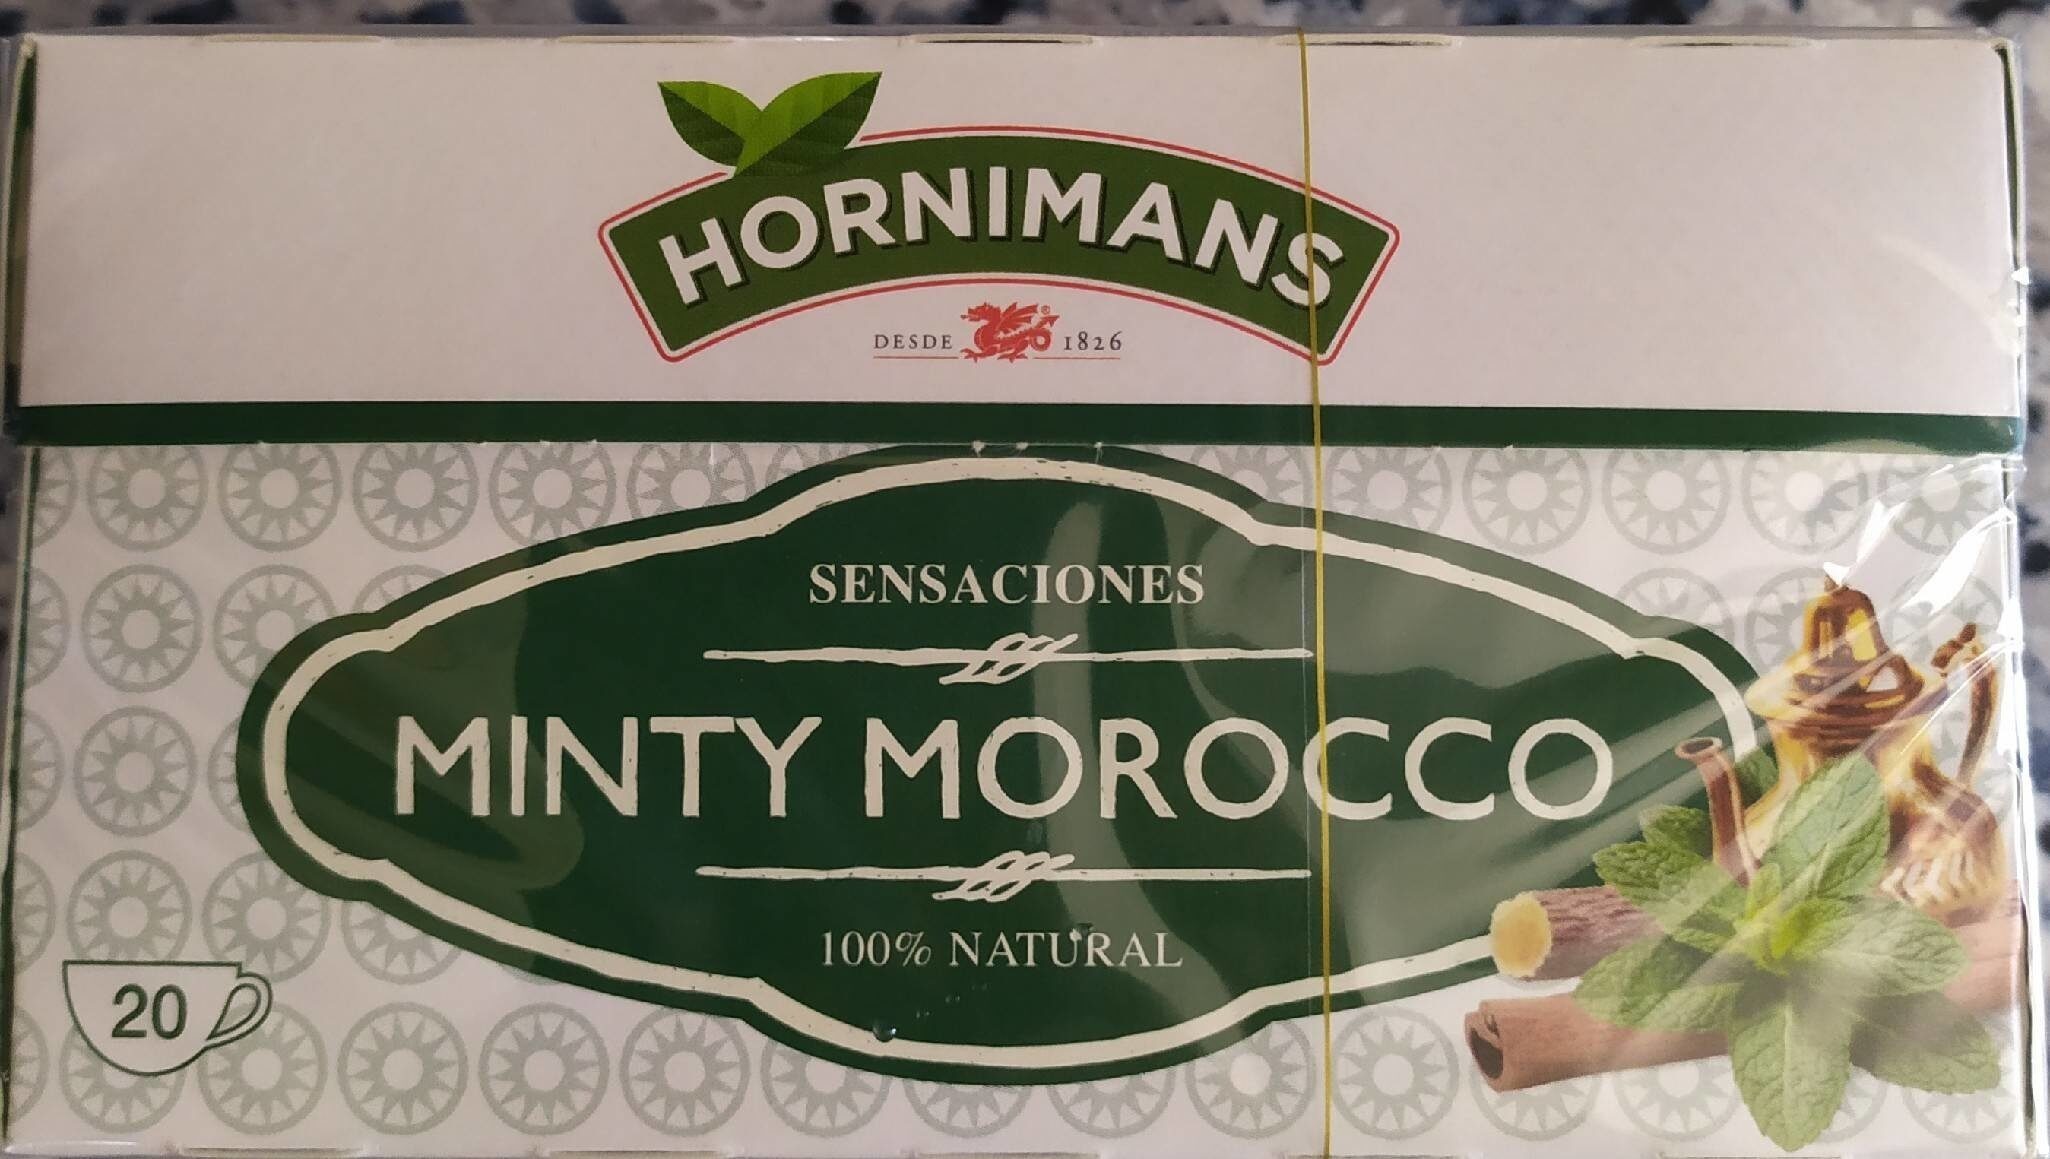 Sensaciones minty morocco - Producte - es